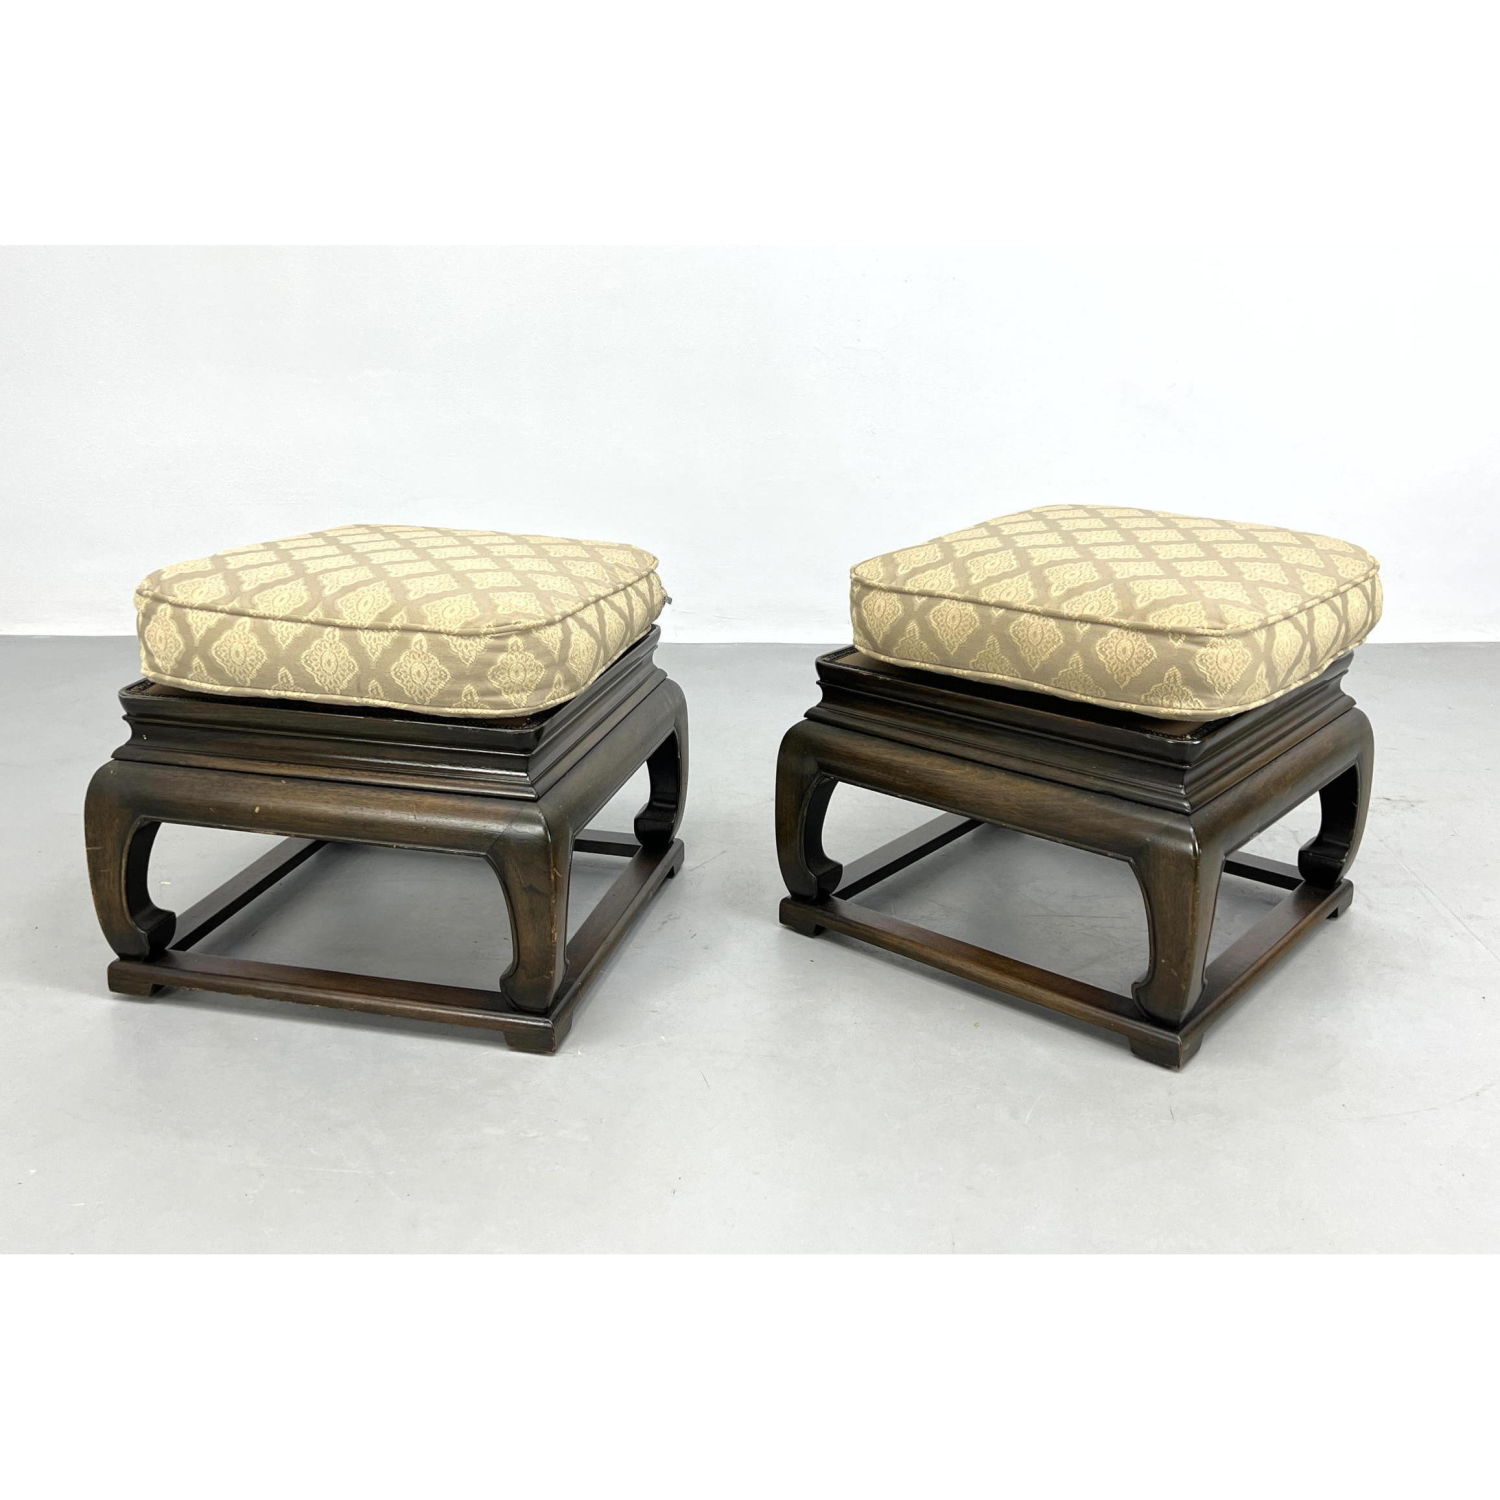 Pair Asian Style footstool Ottoman 2ba589